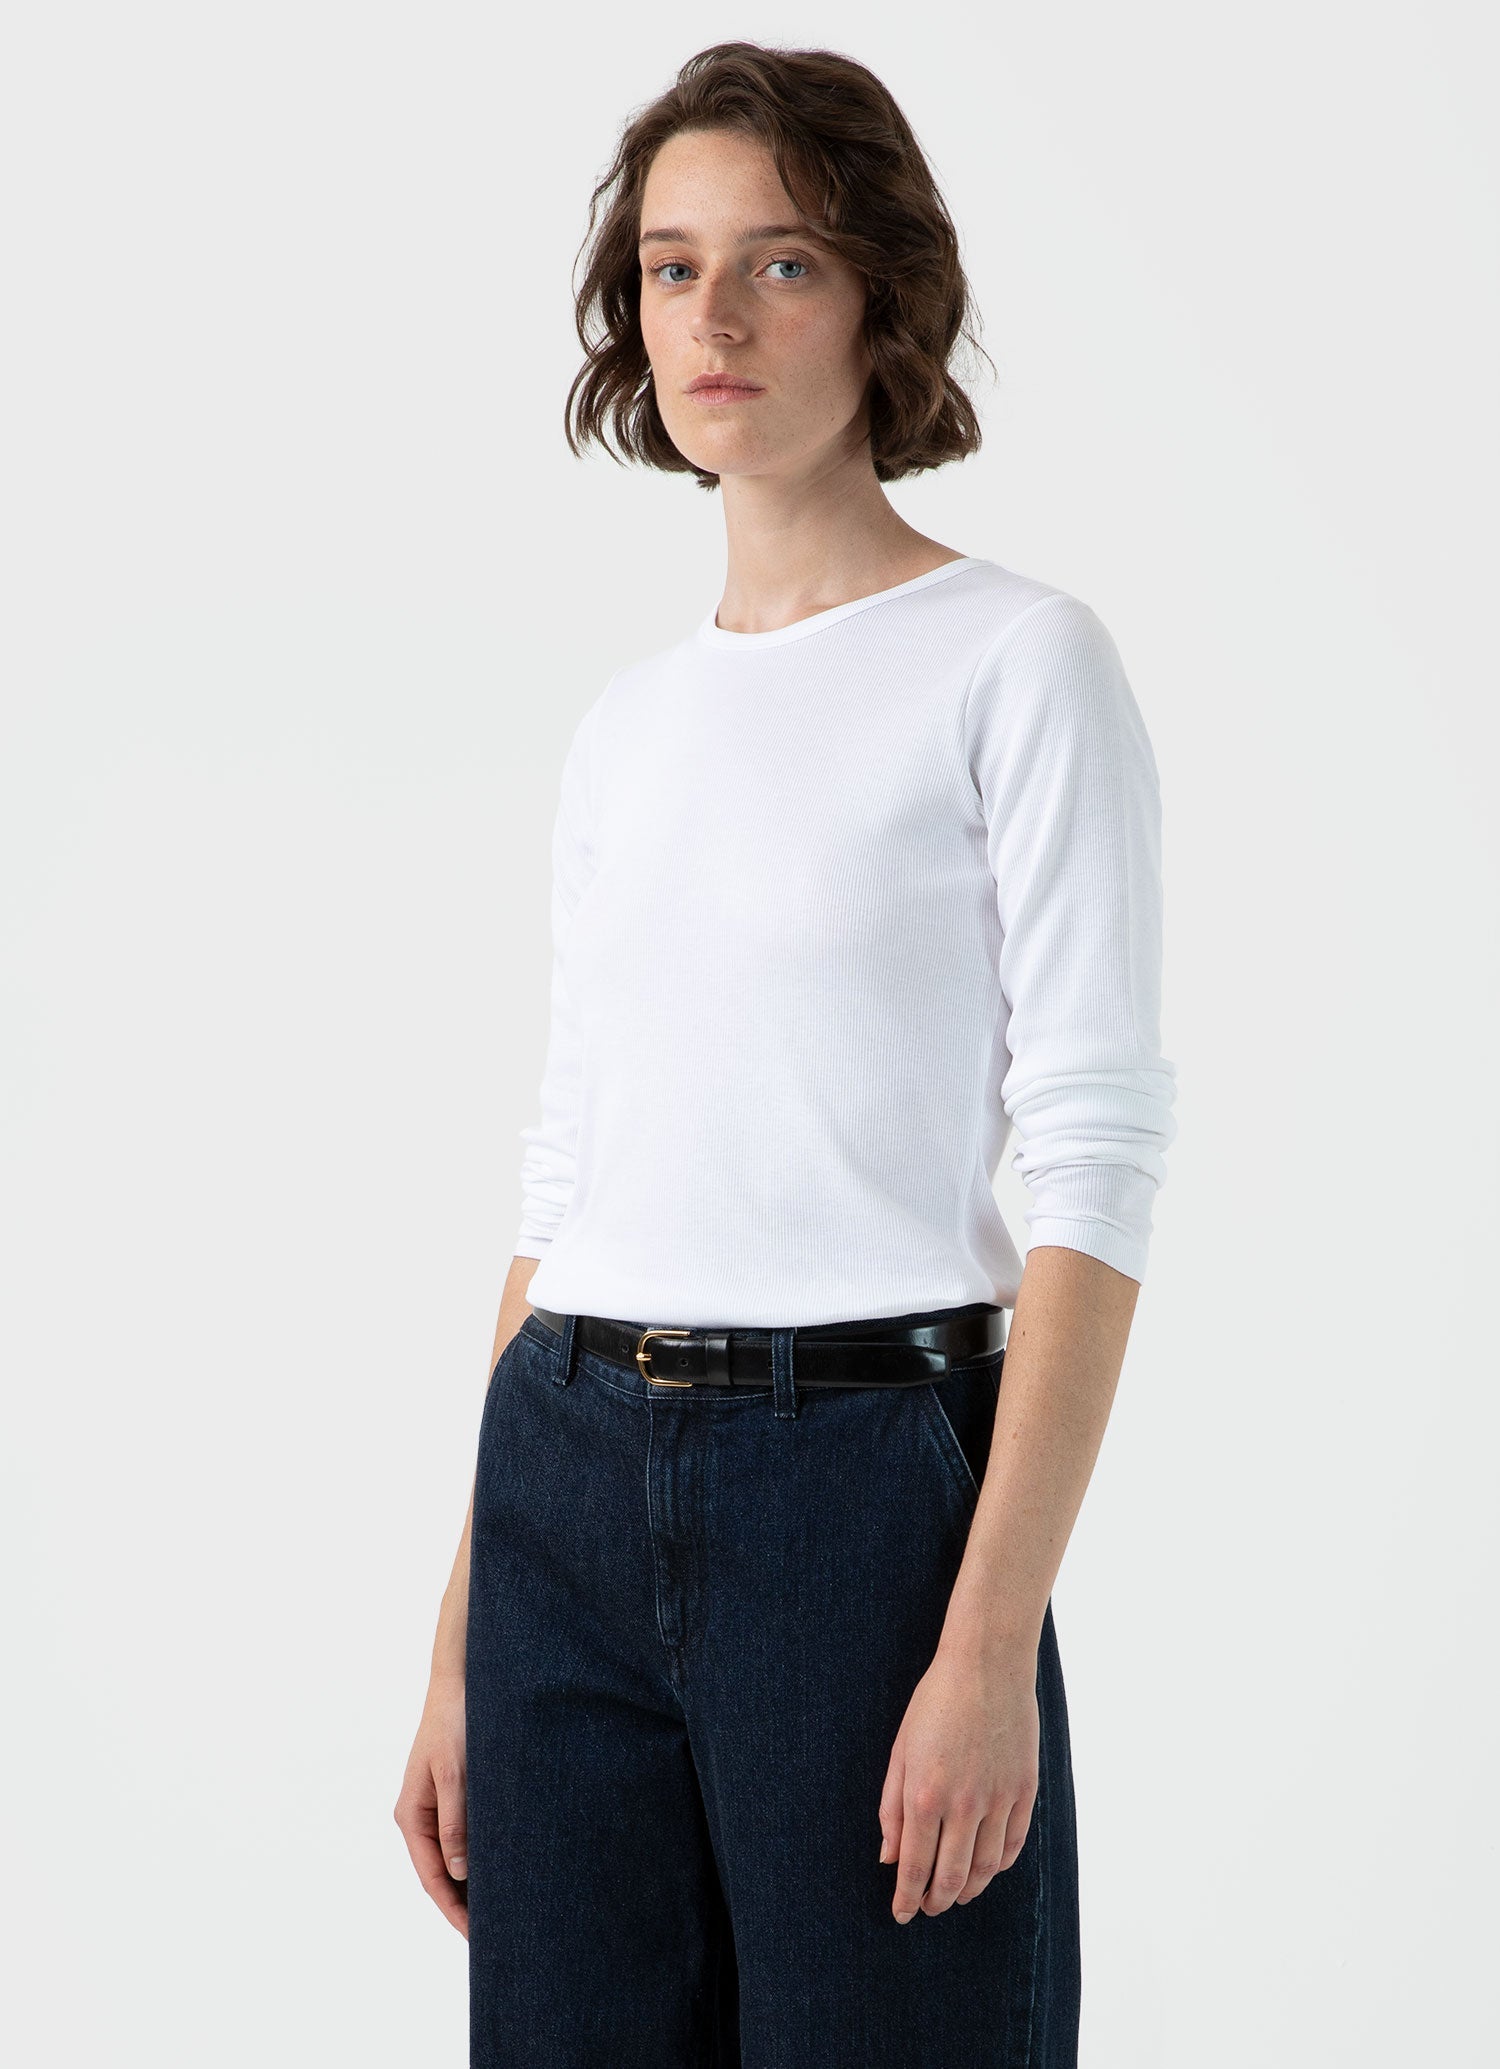 Women's Ribbed Long Sleeve T-shirt in White | Sunspel